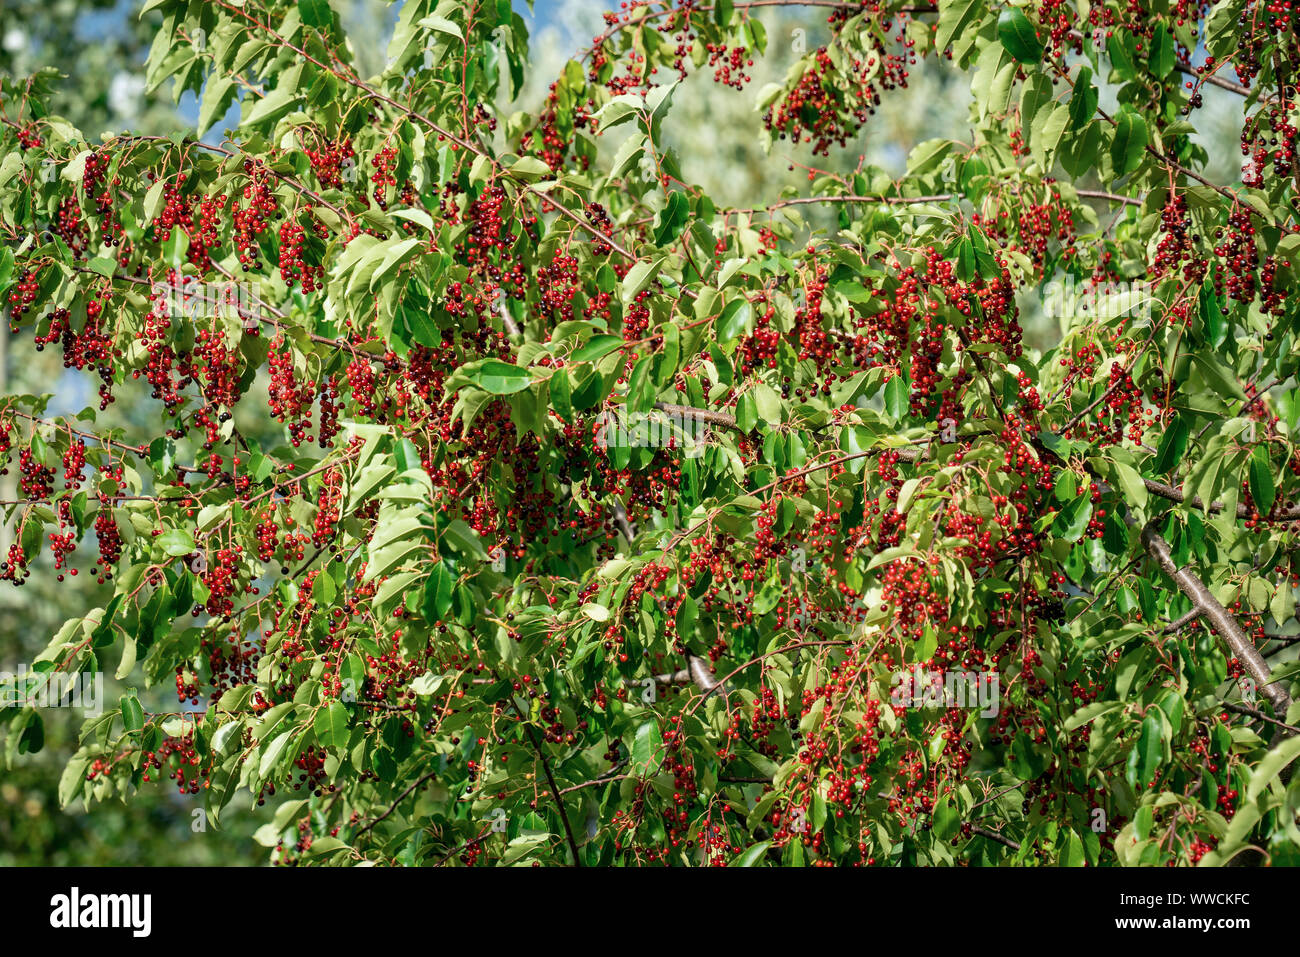 A black cherry tree (prunus serotina) full of unripe red berries in late summer sunshine Stock Photo